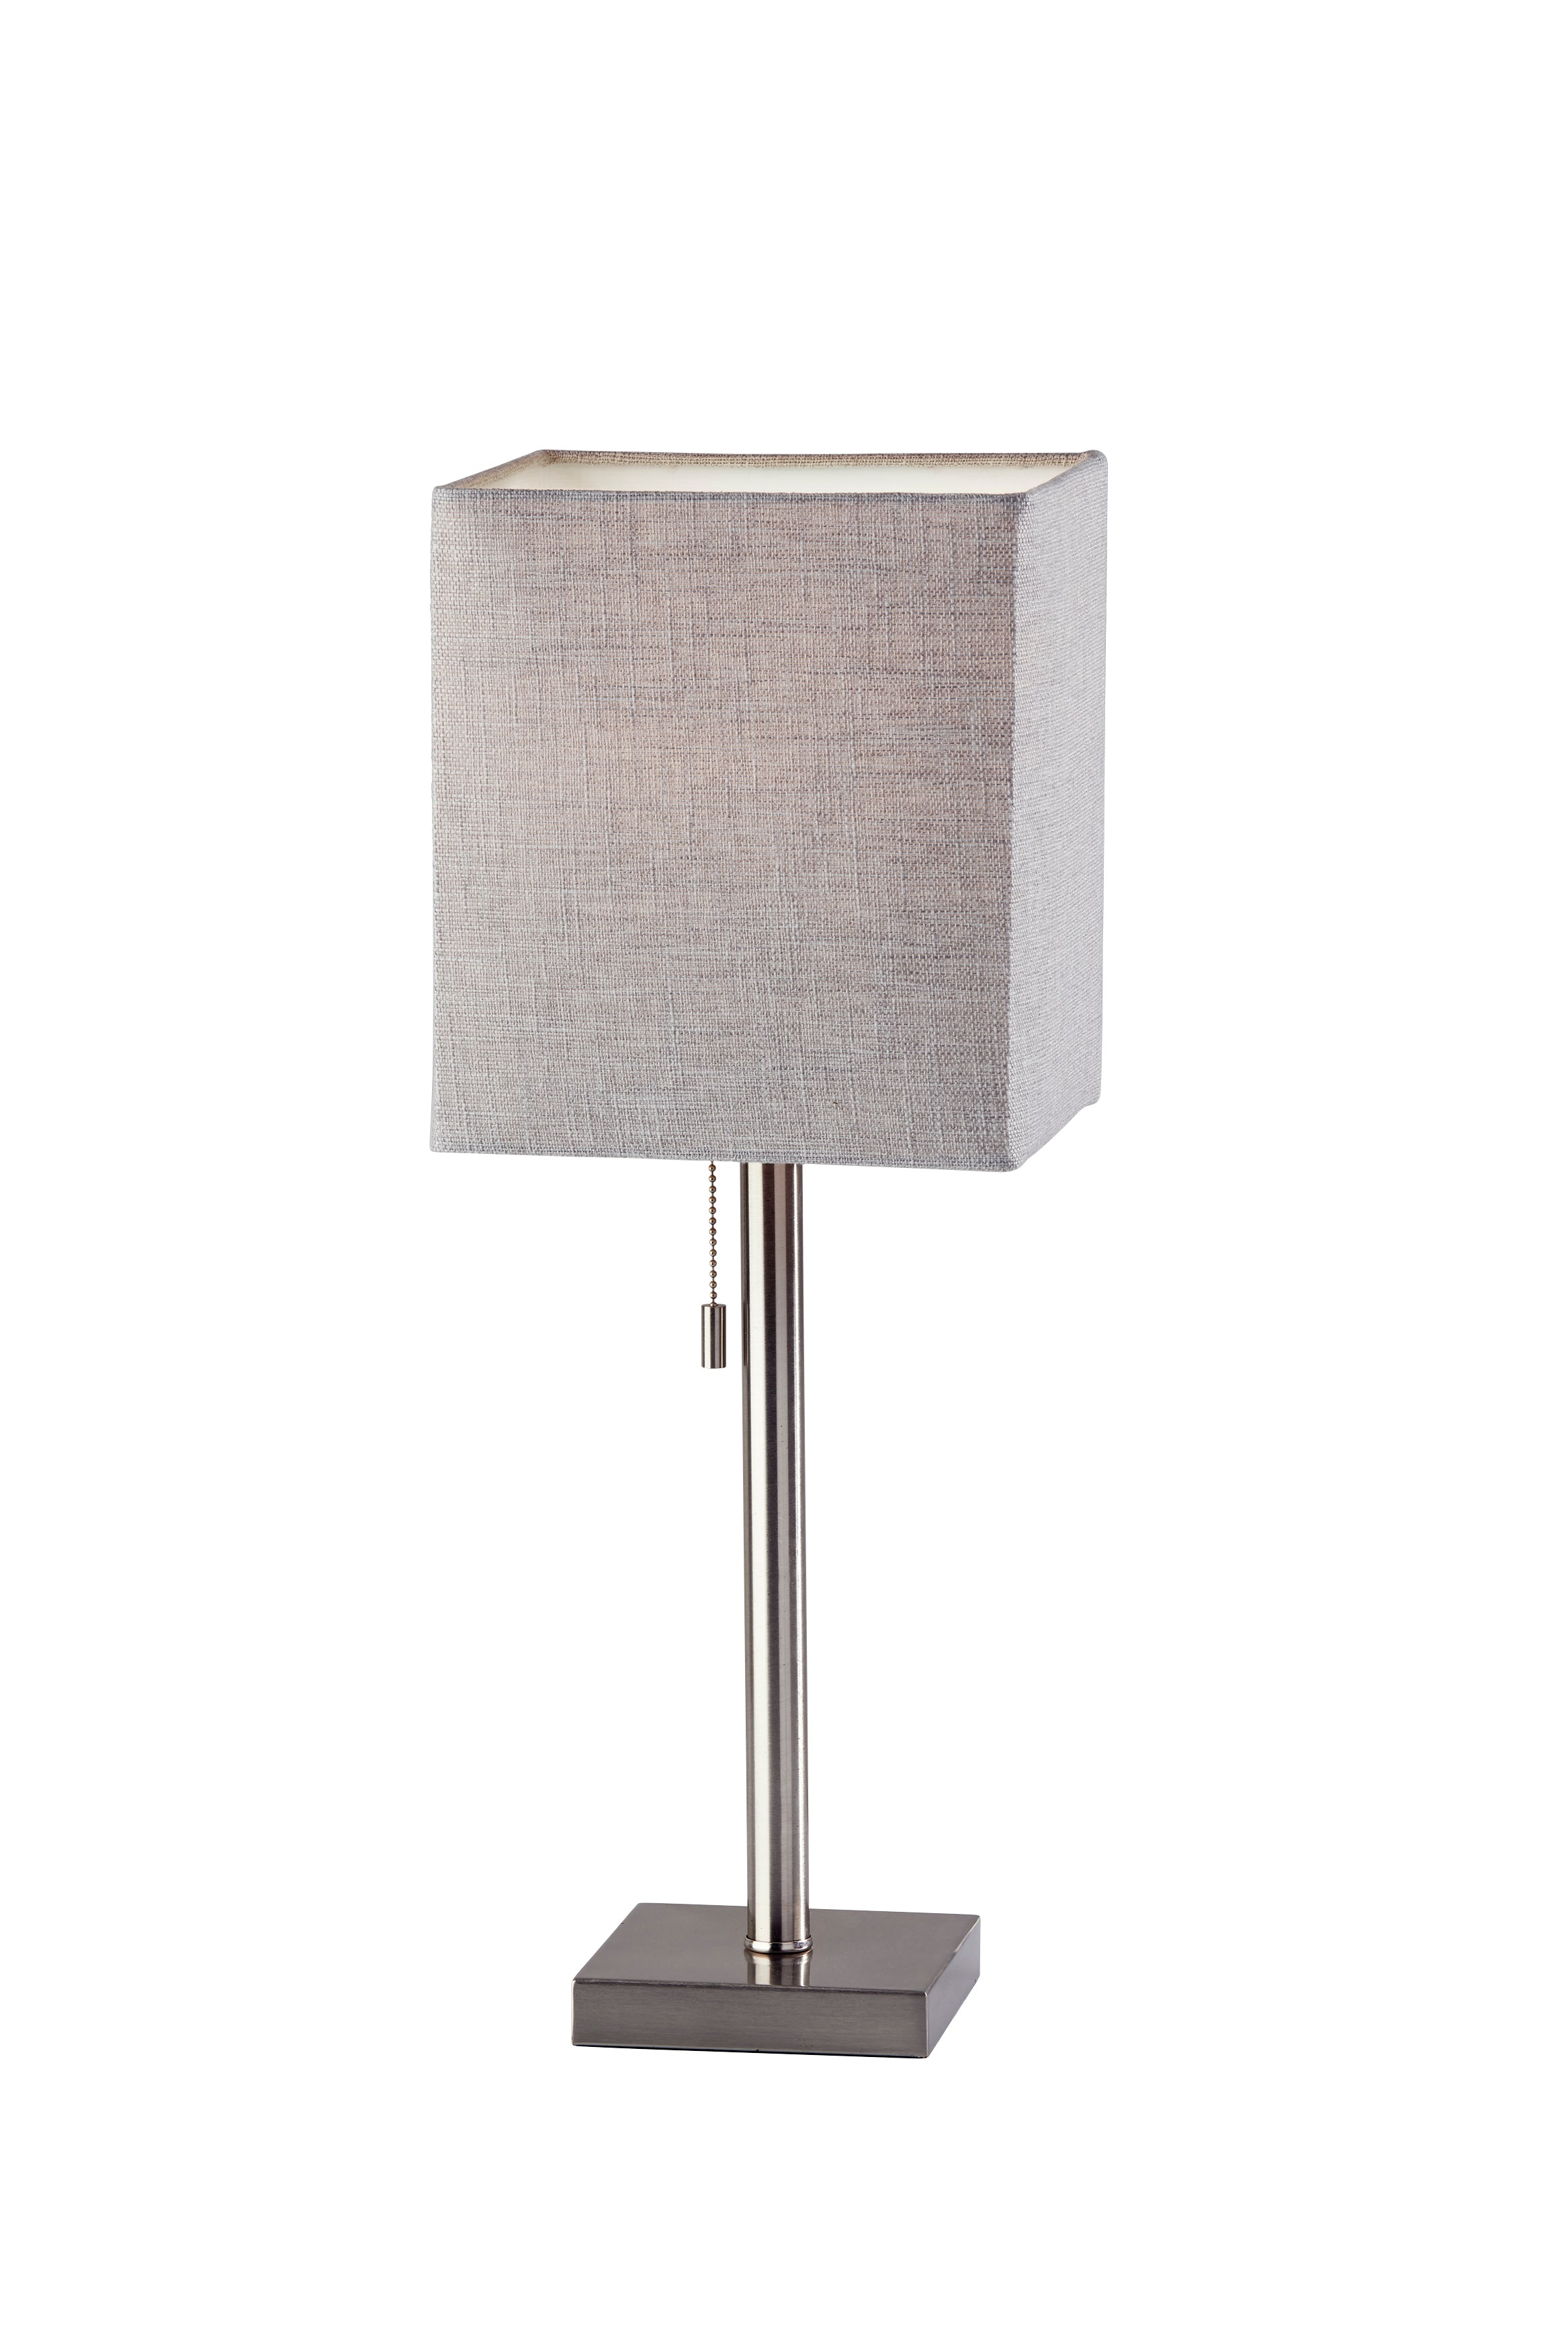 ESTELLE Lampe sur table Nickel - 1566-22 | ADESSO